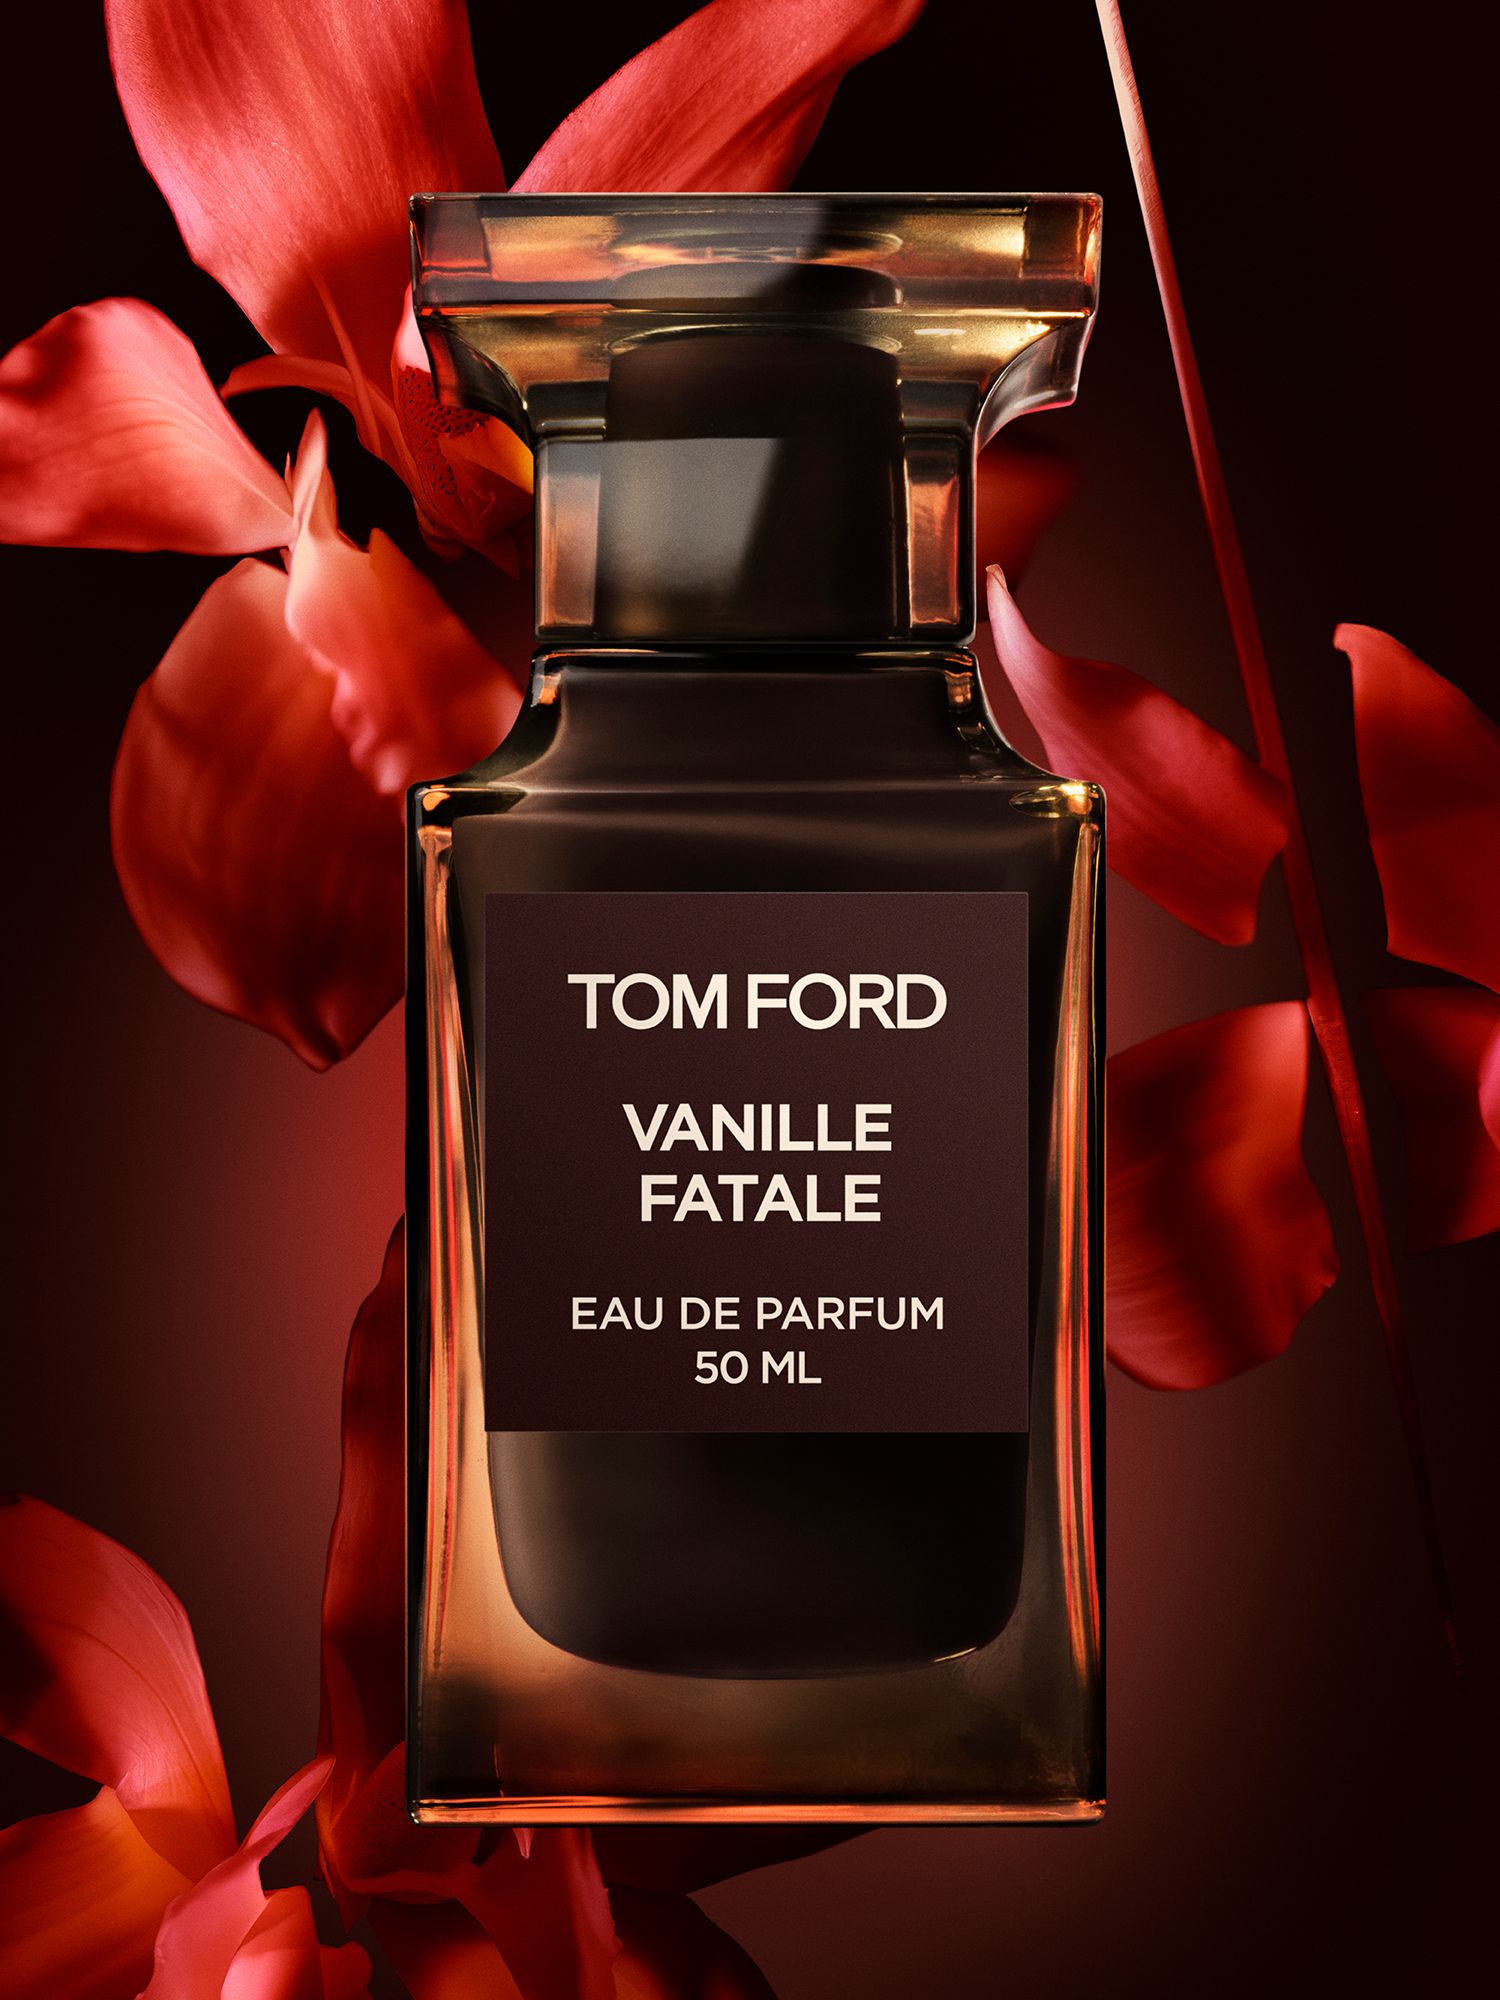 TOM FORD Private Blend Vanille Fatale Eau de Parfum, 50ml 4